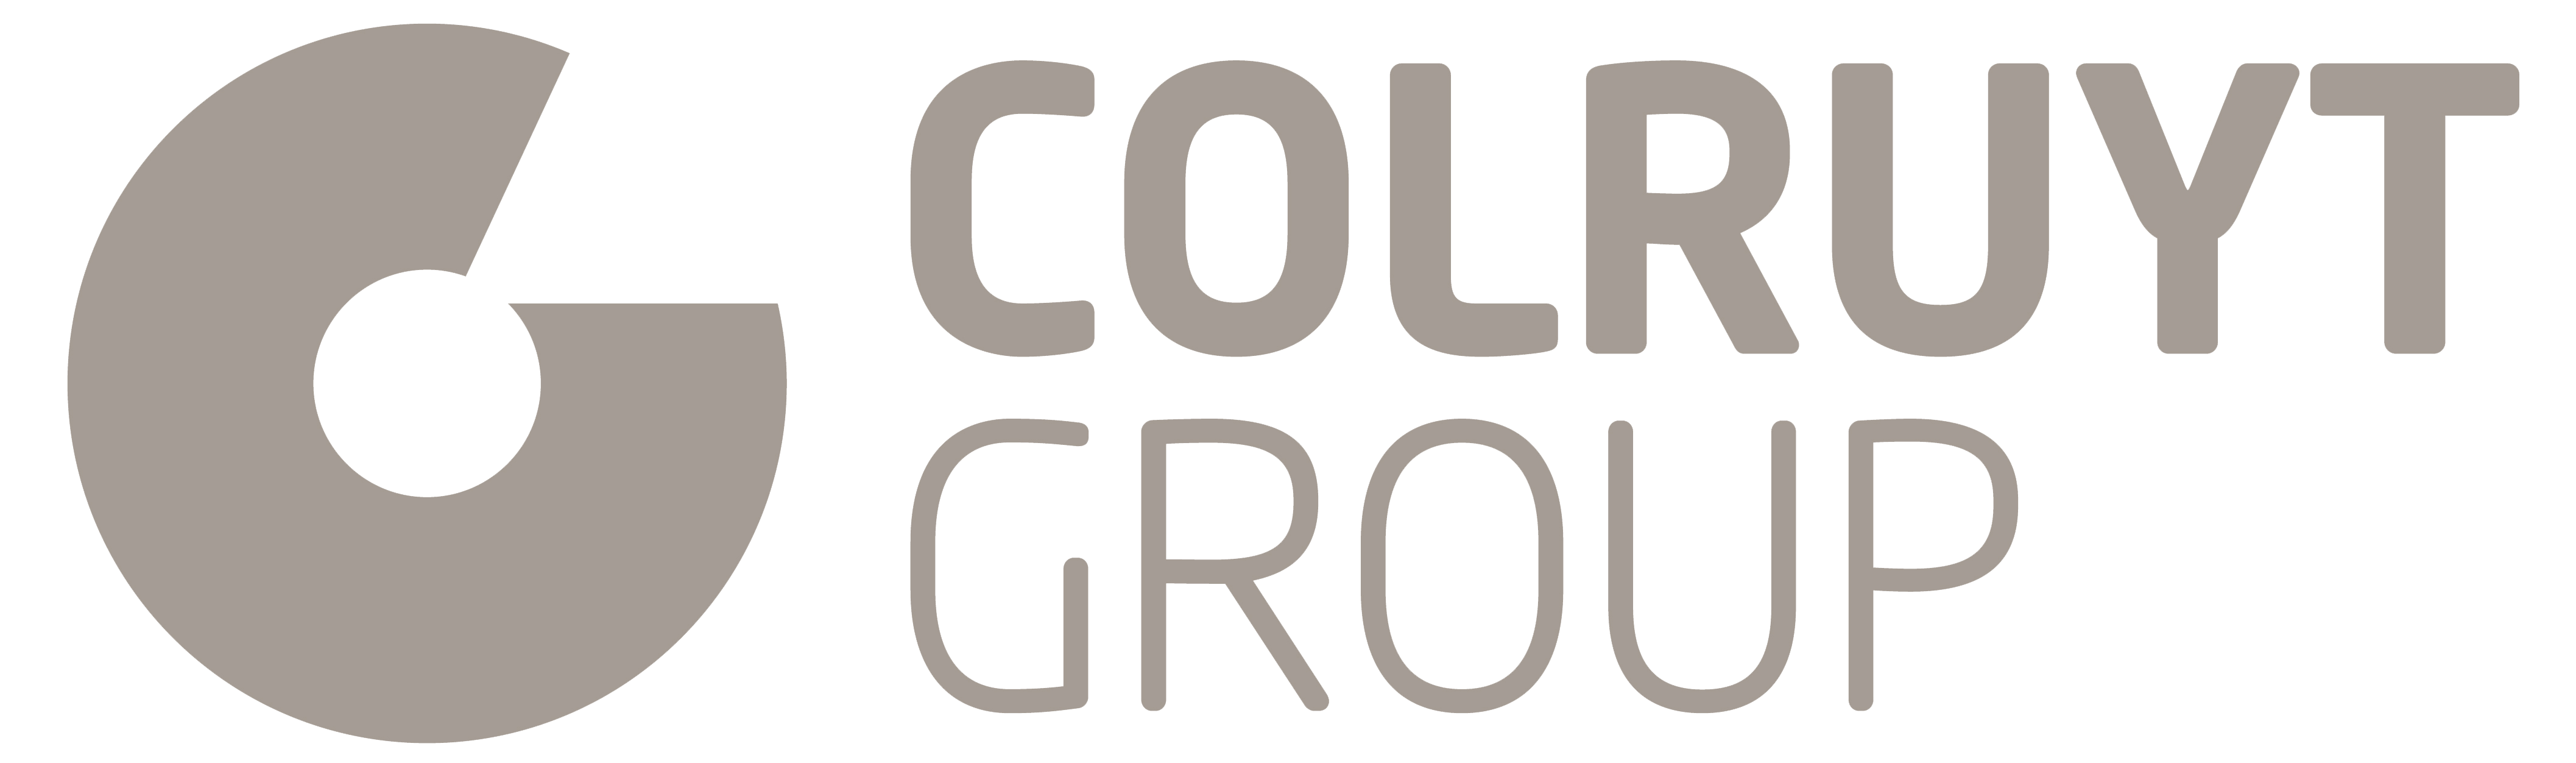 logo colruyt group